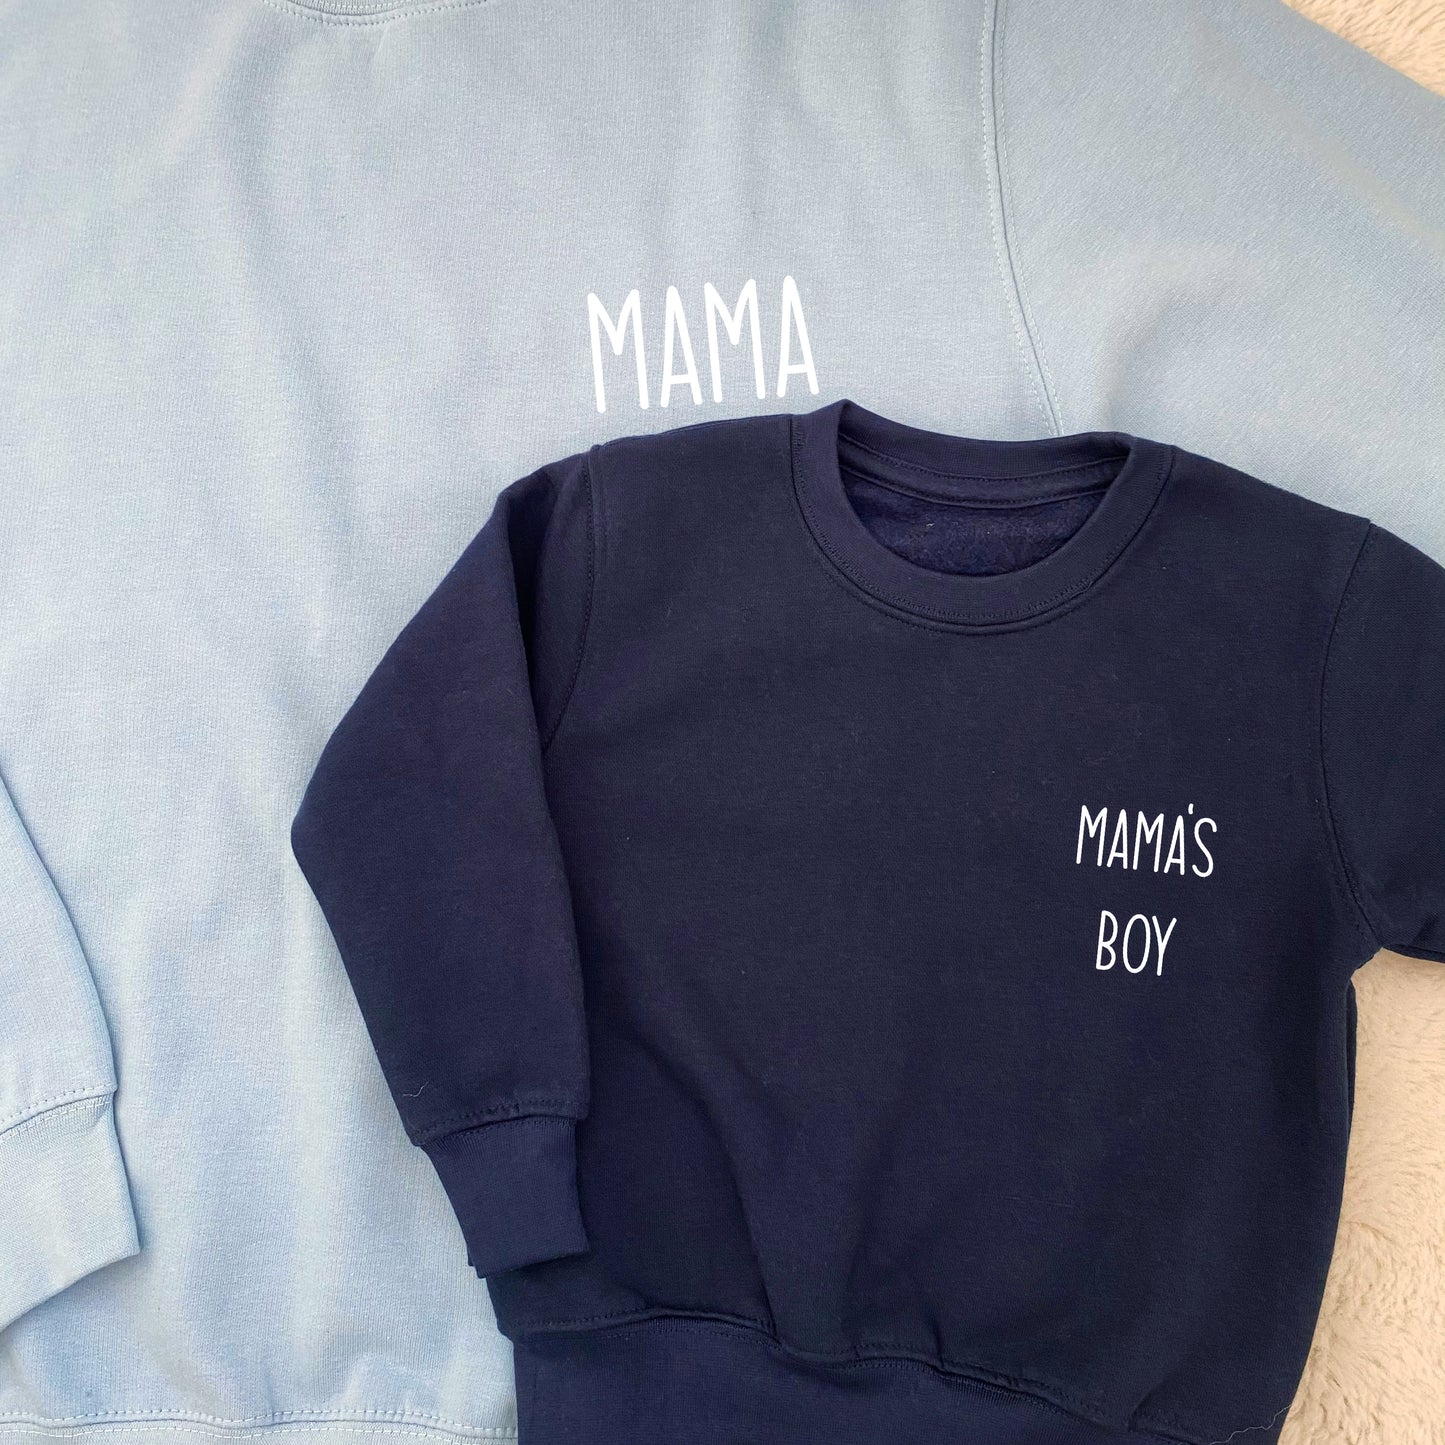 Mama & Mama’s Boy / Mama's Girl Matching Sweatshirts